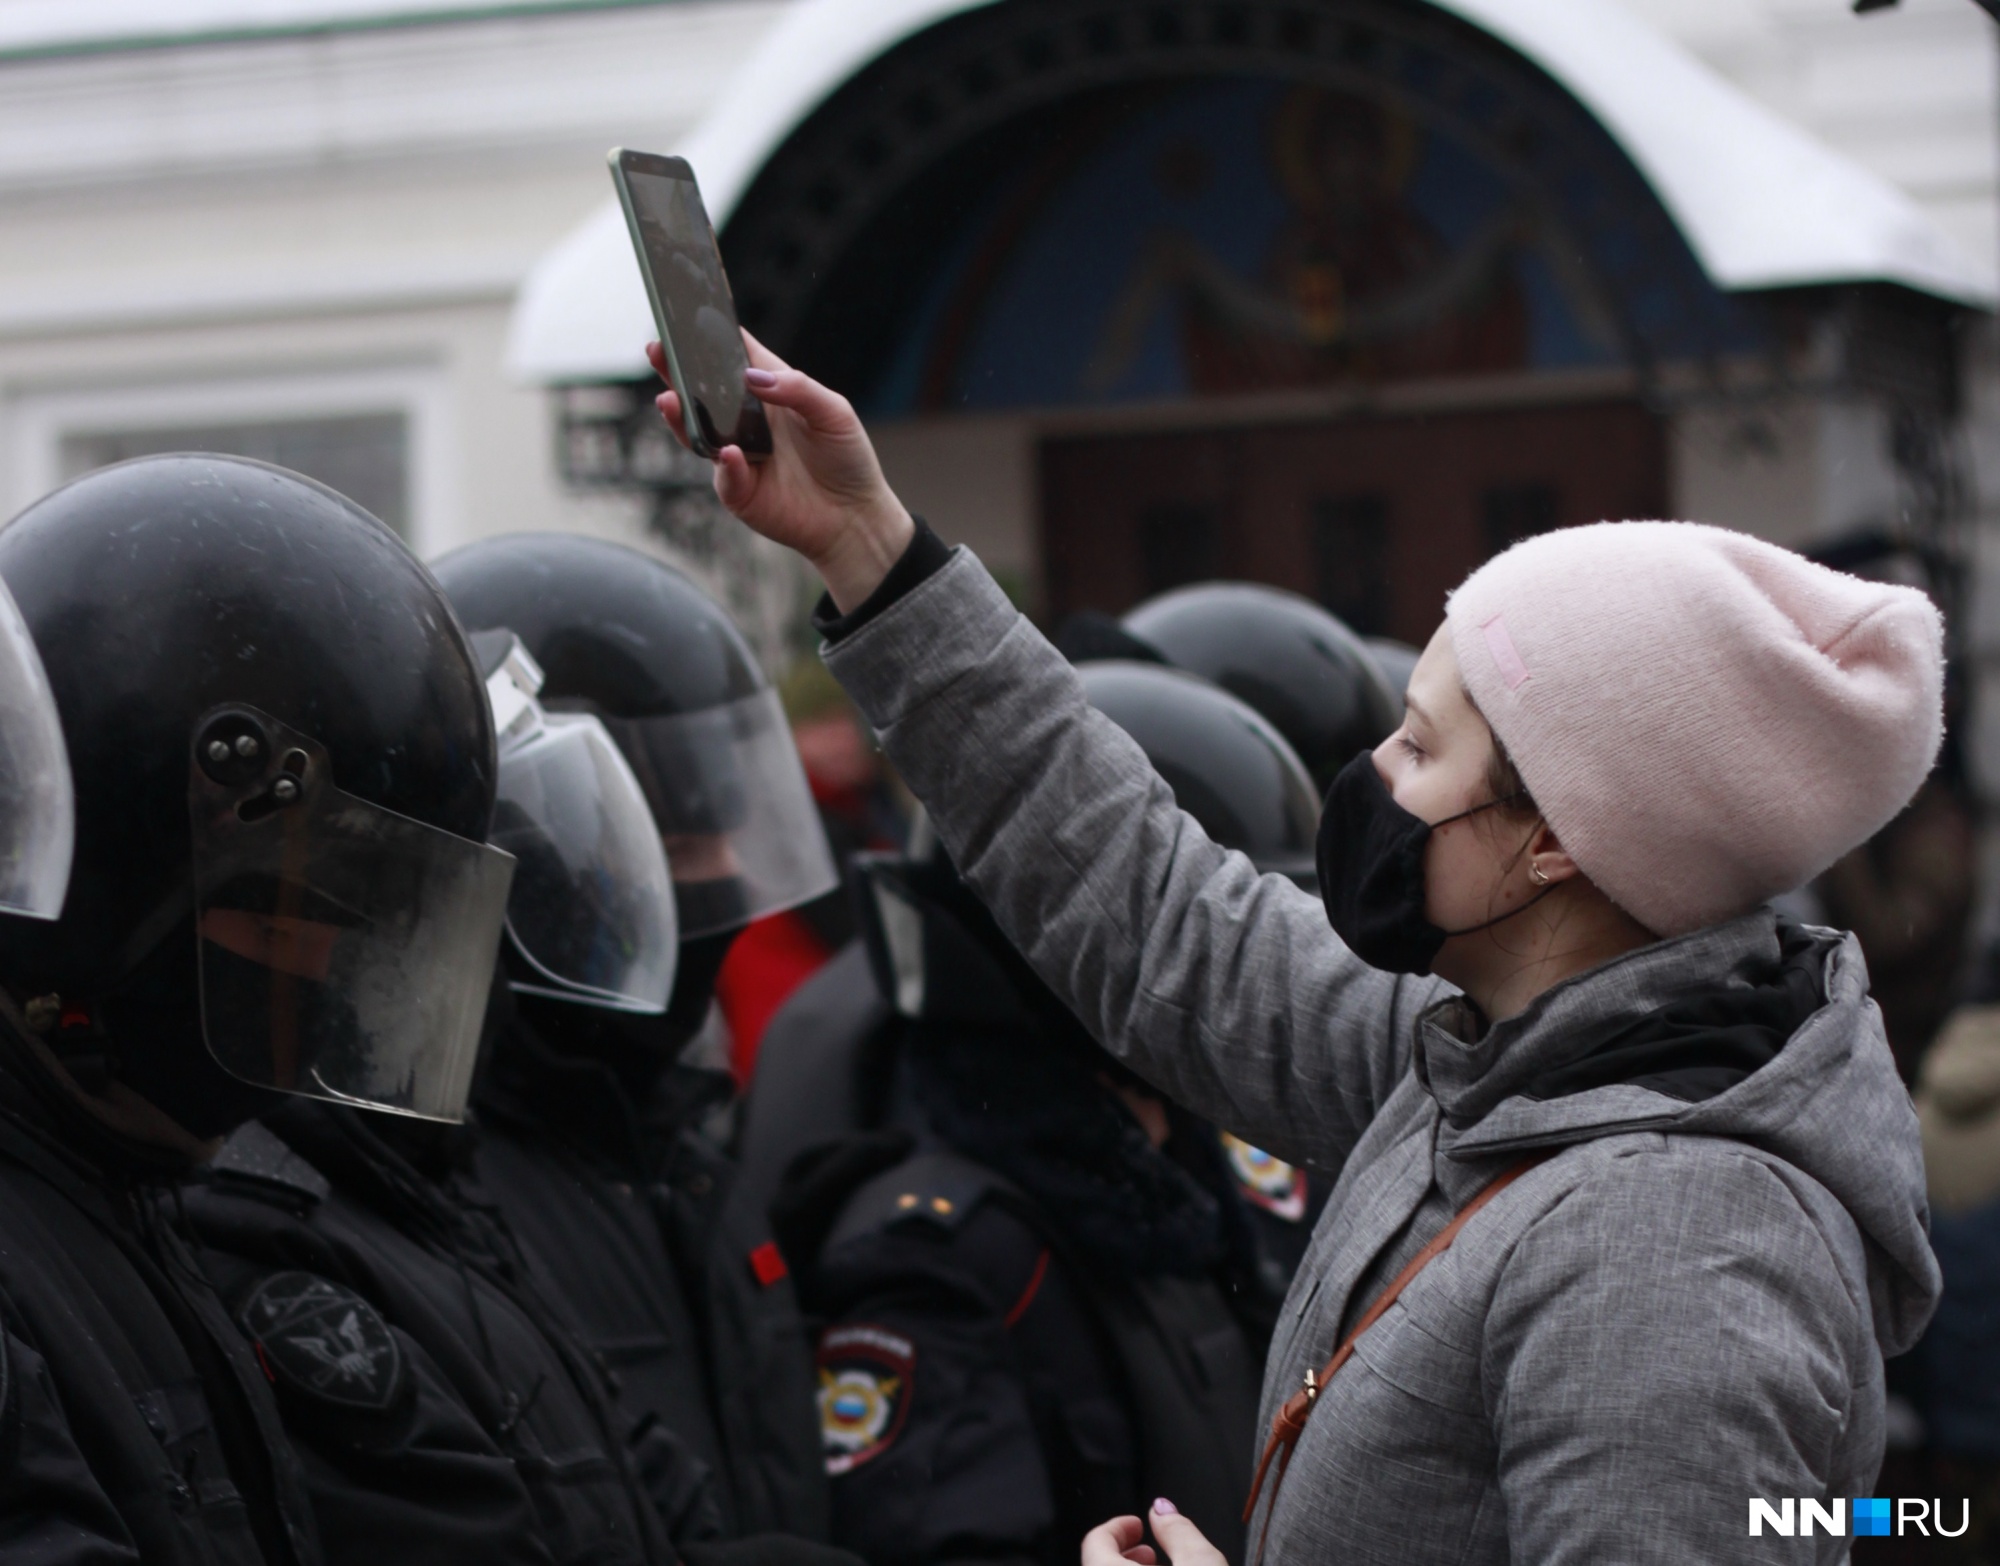 «Здесь людей, как невест, воруют»: как прошел митинг в поддержку Навального в Нижнем Новгороде